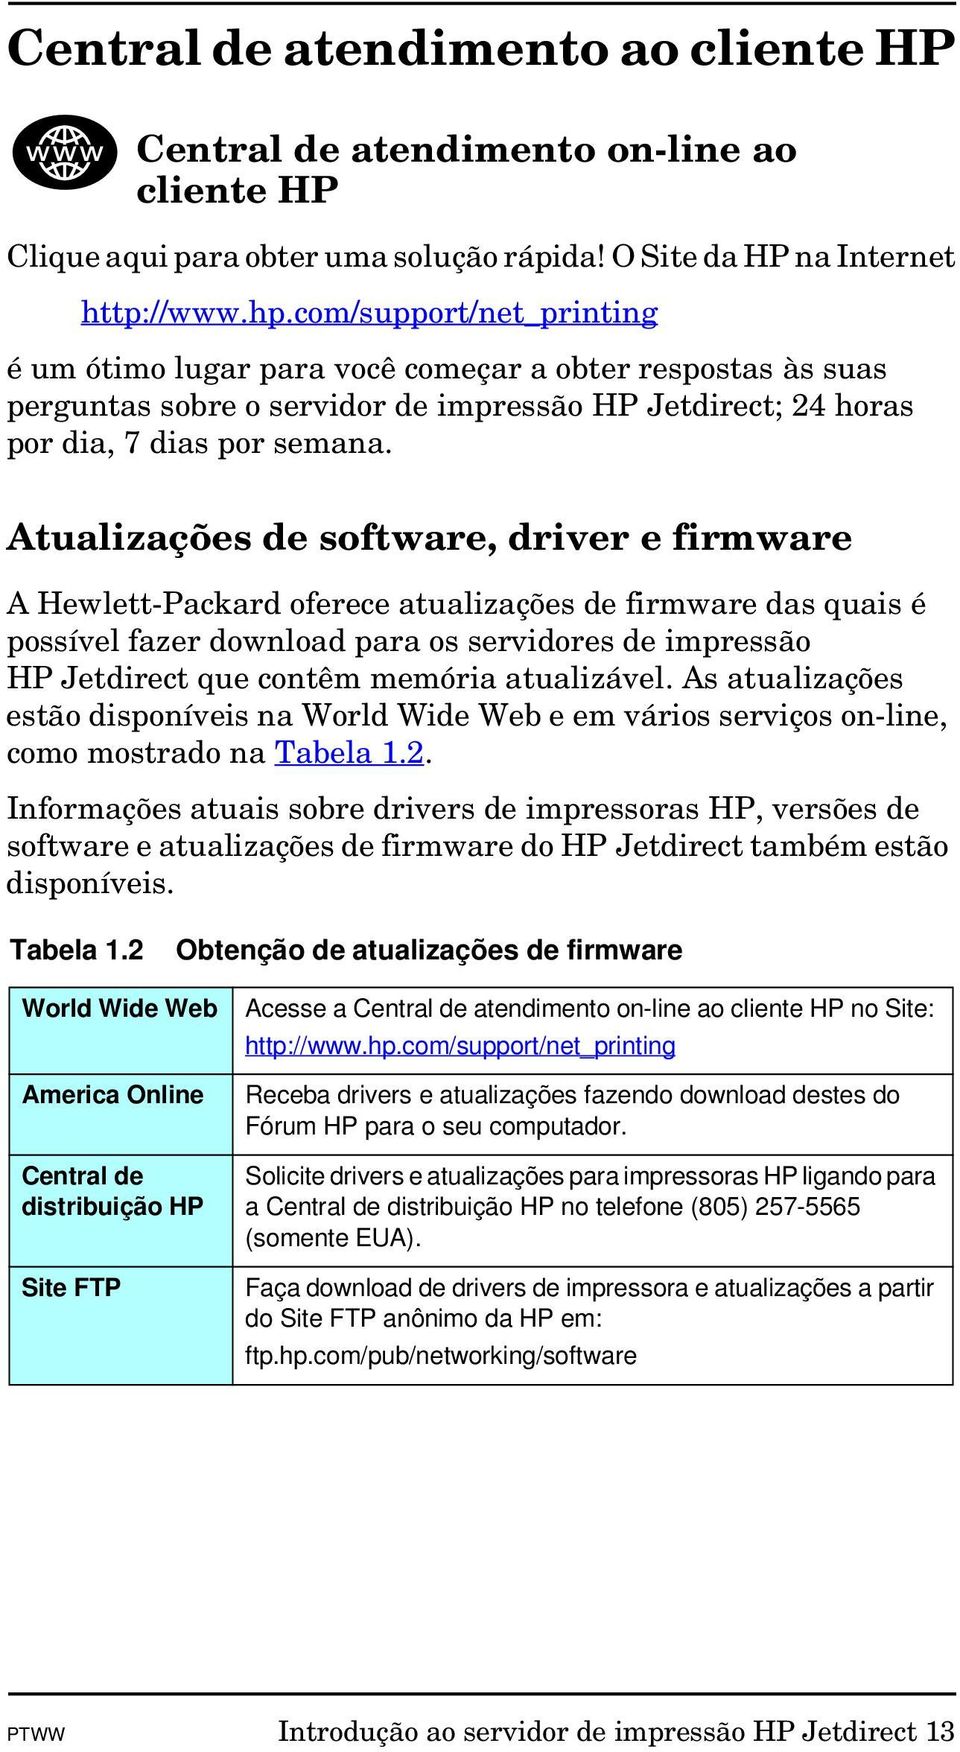 Atualizações de software, driver e firmware A Hewlett-Packard oferece atualizações de firmware das quais é possível fazer download para os servidores de impressão HP Jetdirect que contêm memória